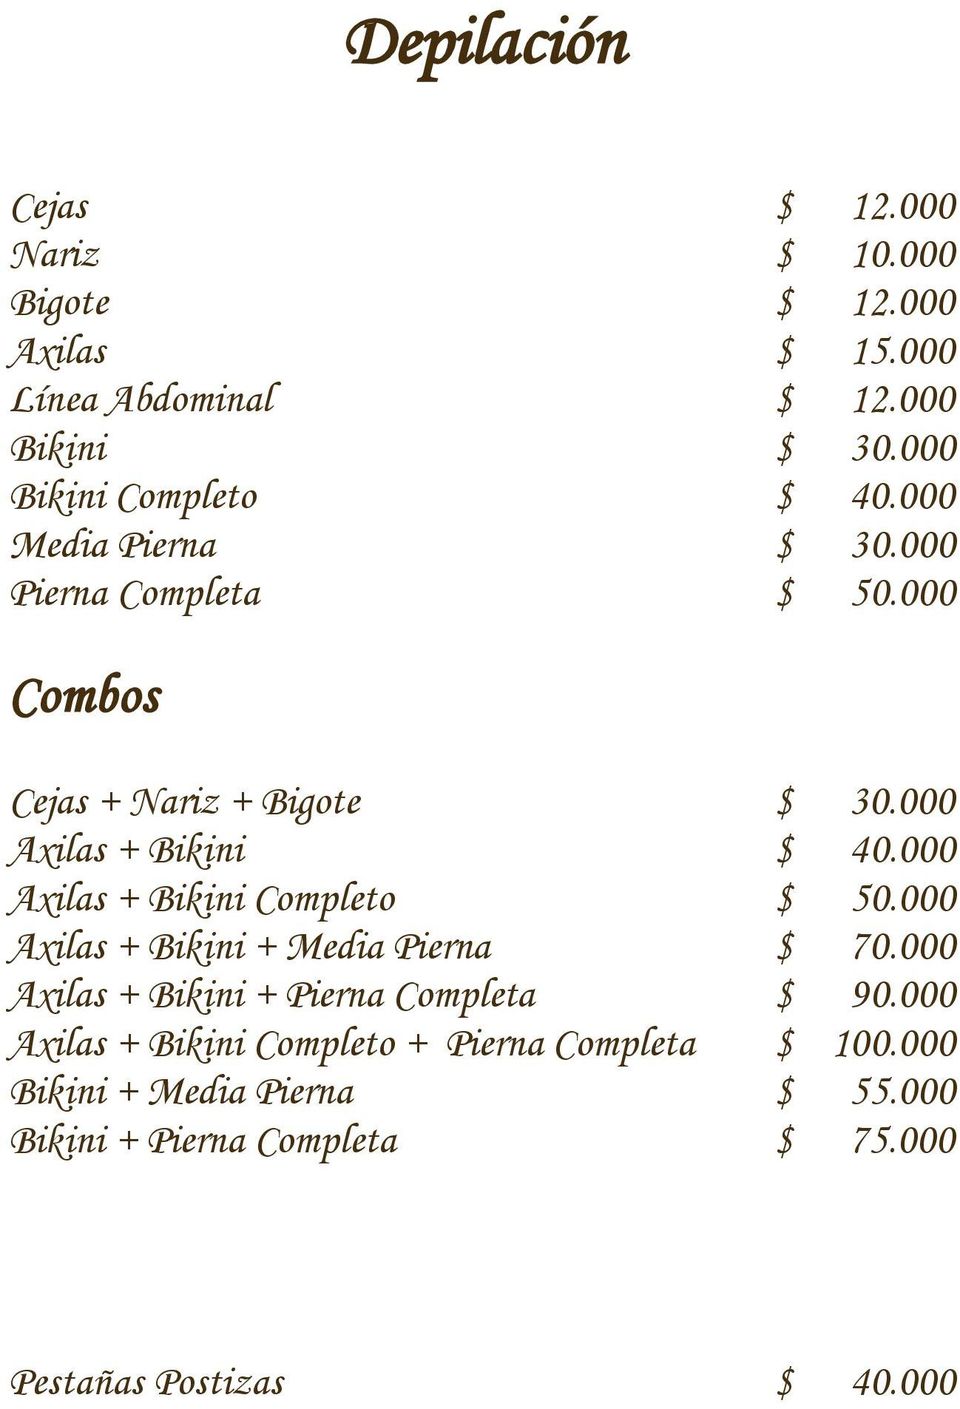 000 Axilas + Bikini $ 40.000 Axilas + Bikini Completo $ 50.000 Axilas + Bikini + Media Pierna $ 70.